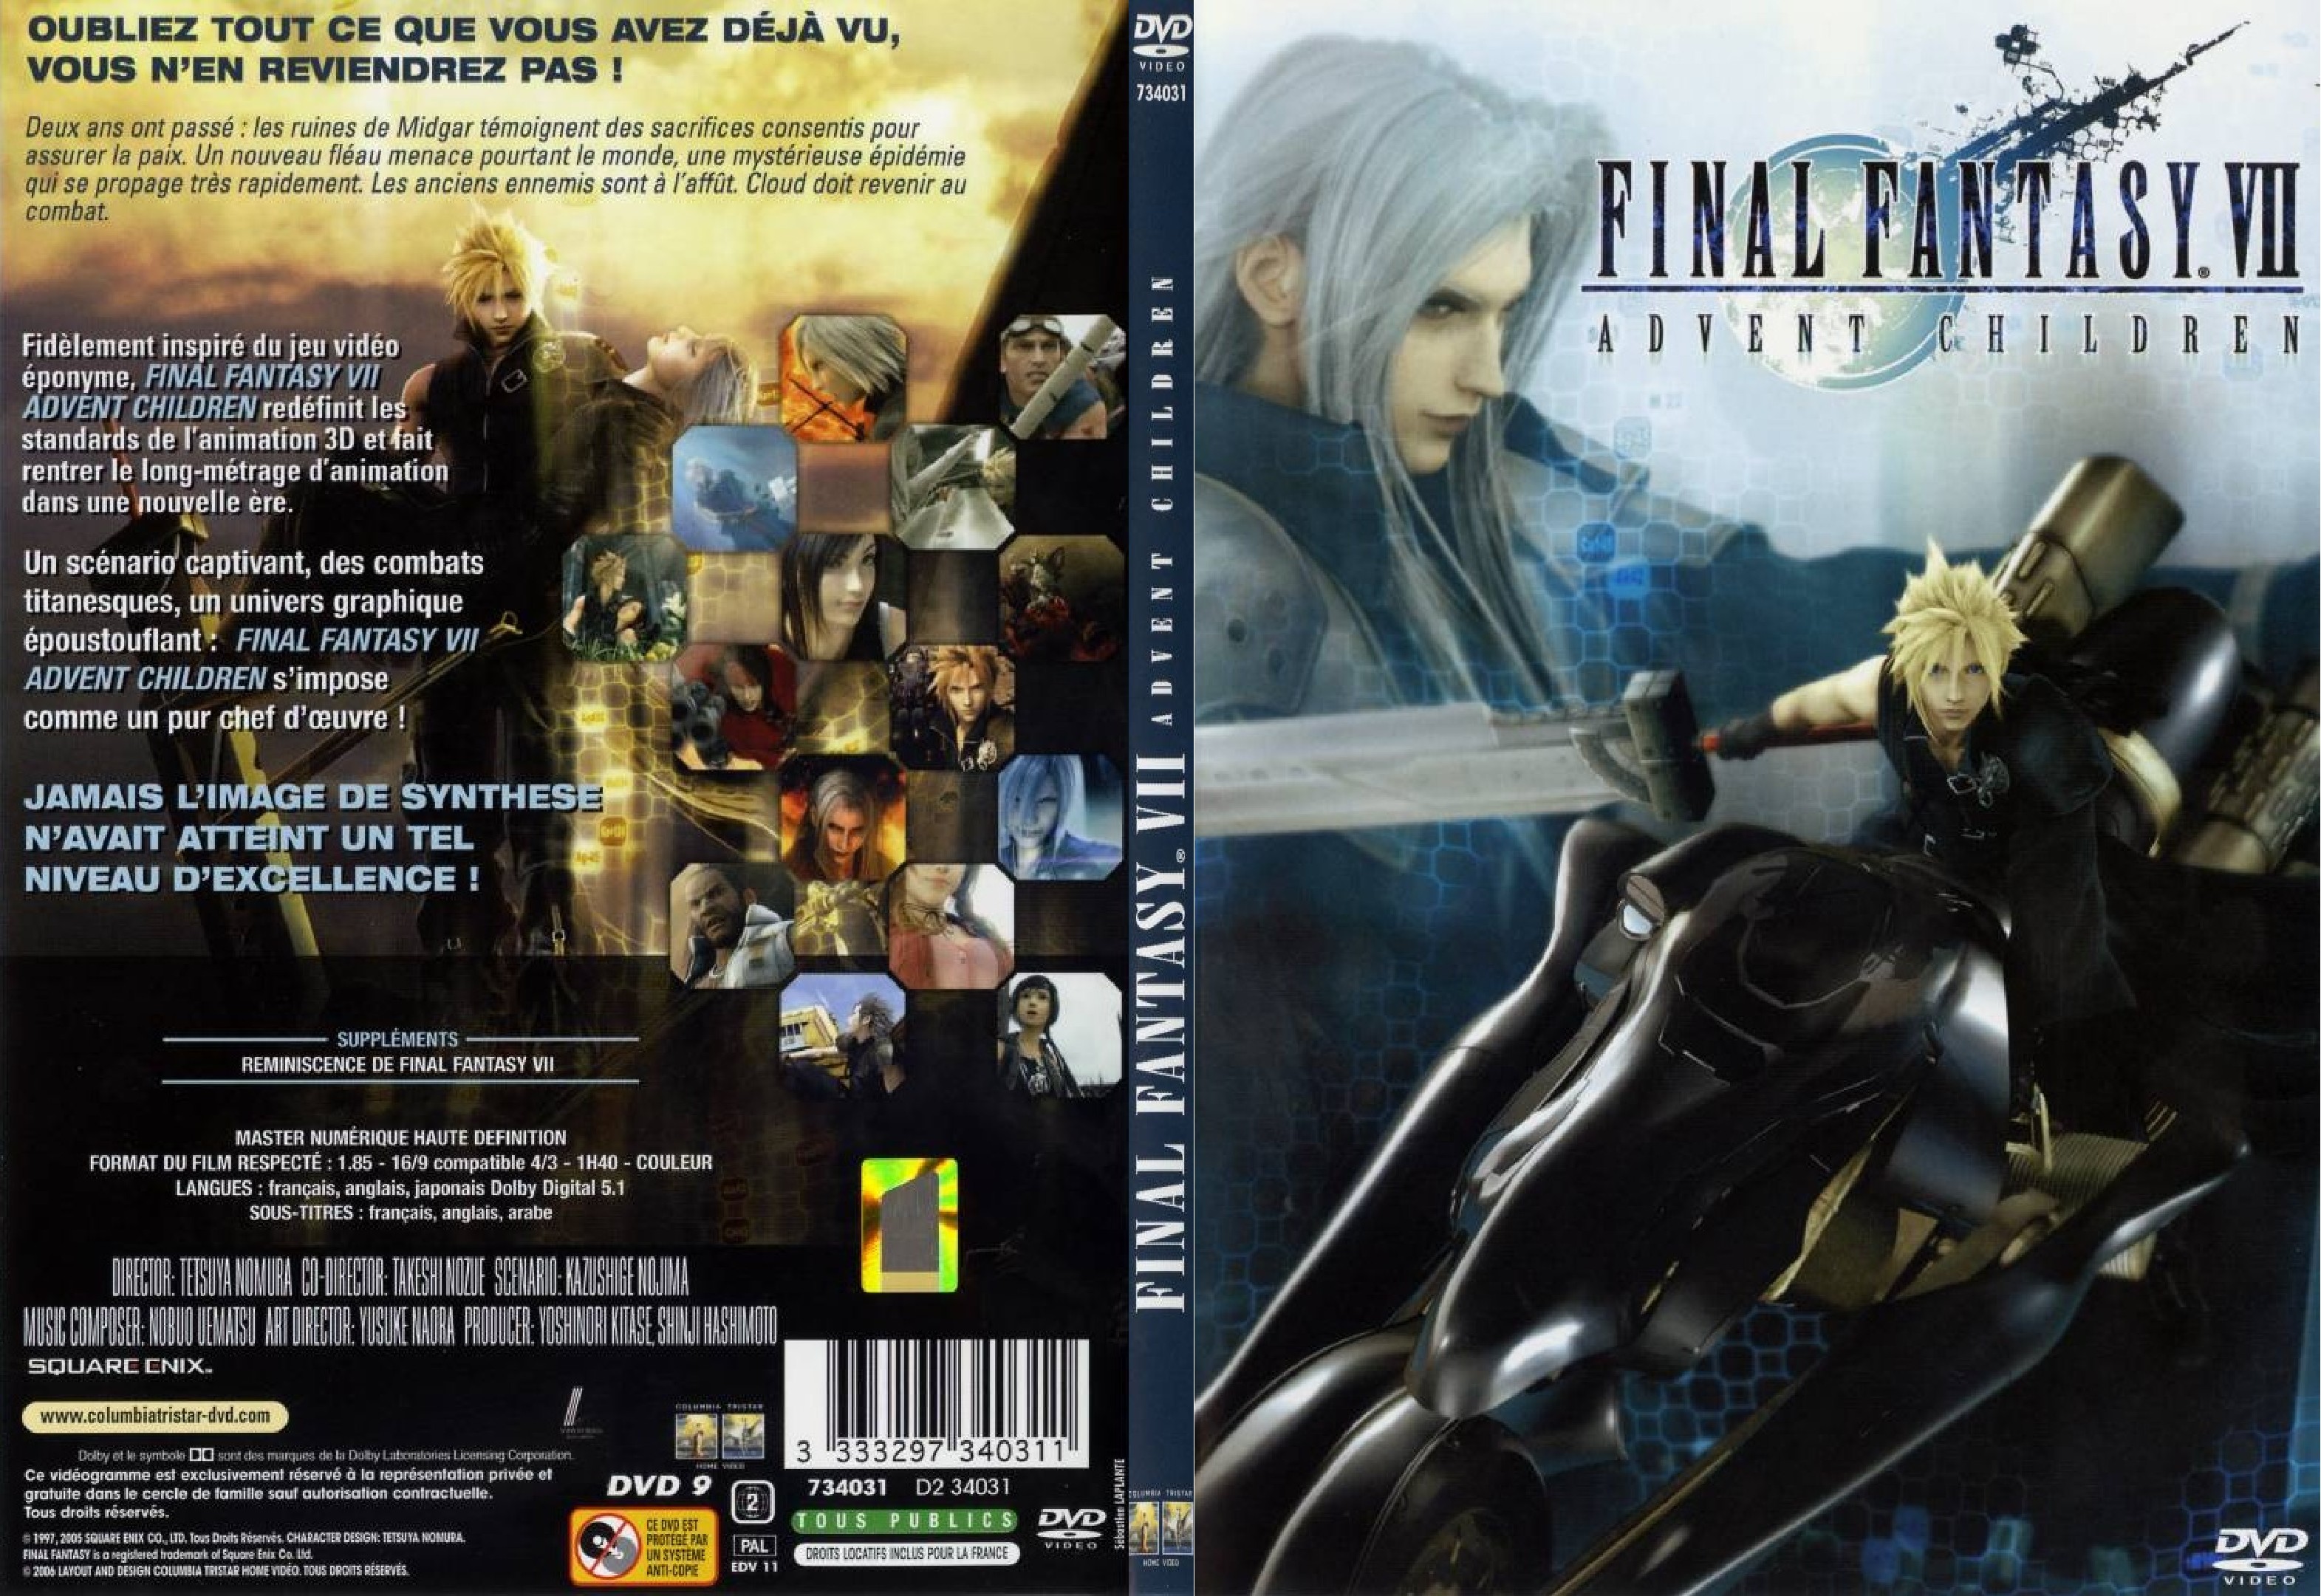 Jaquette DVD Final Fantasy VII Advent Children - SLIM v2